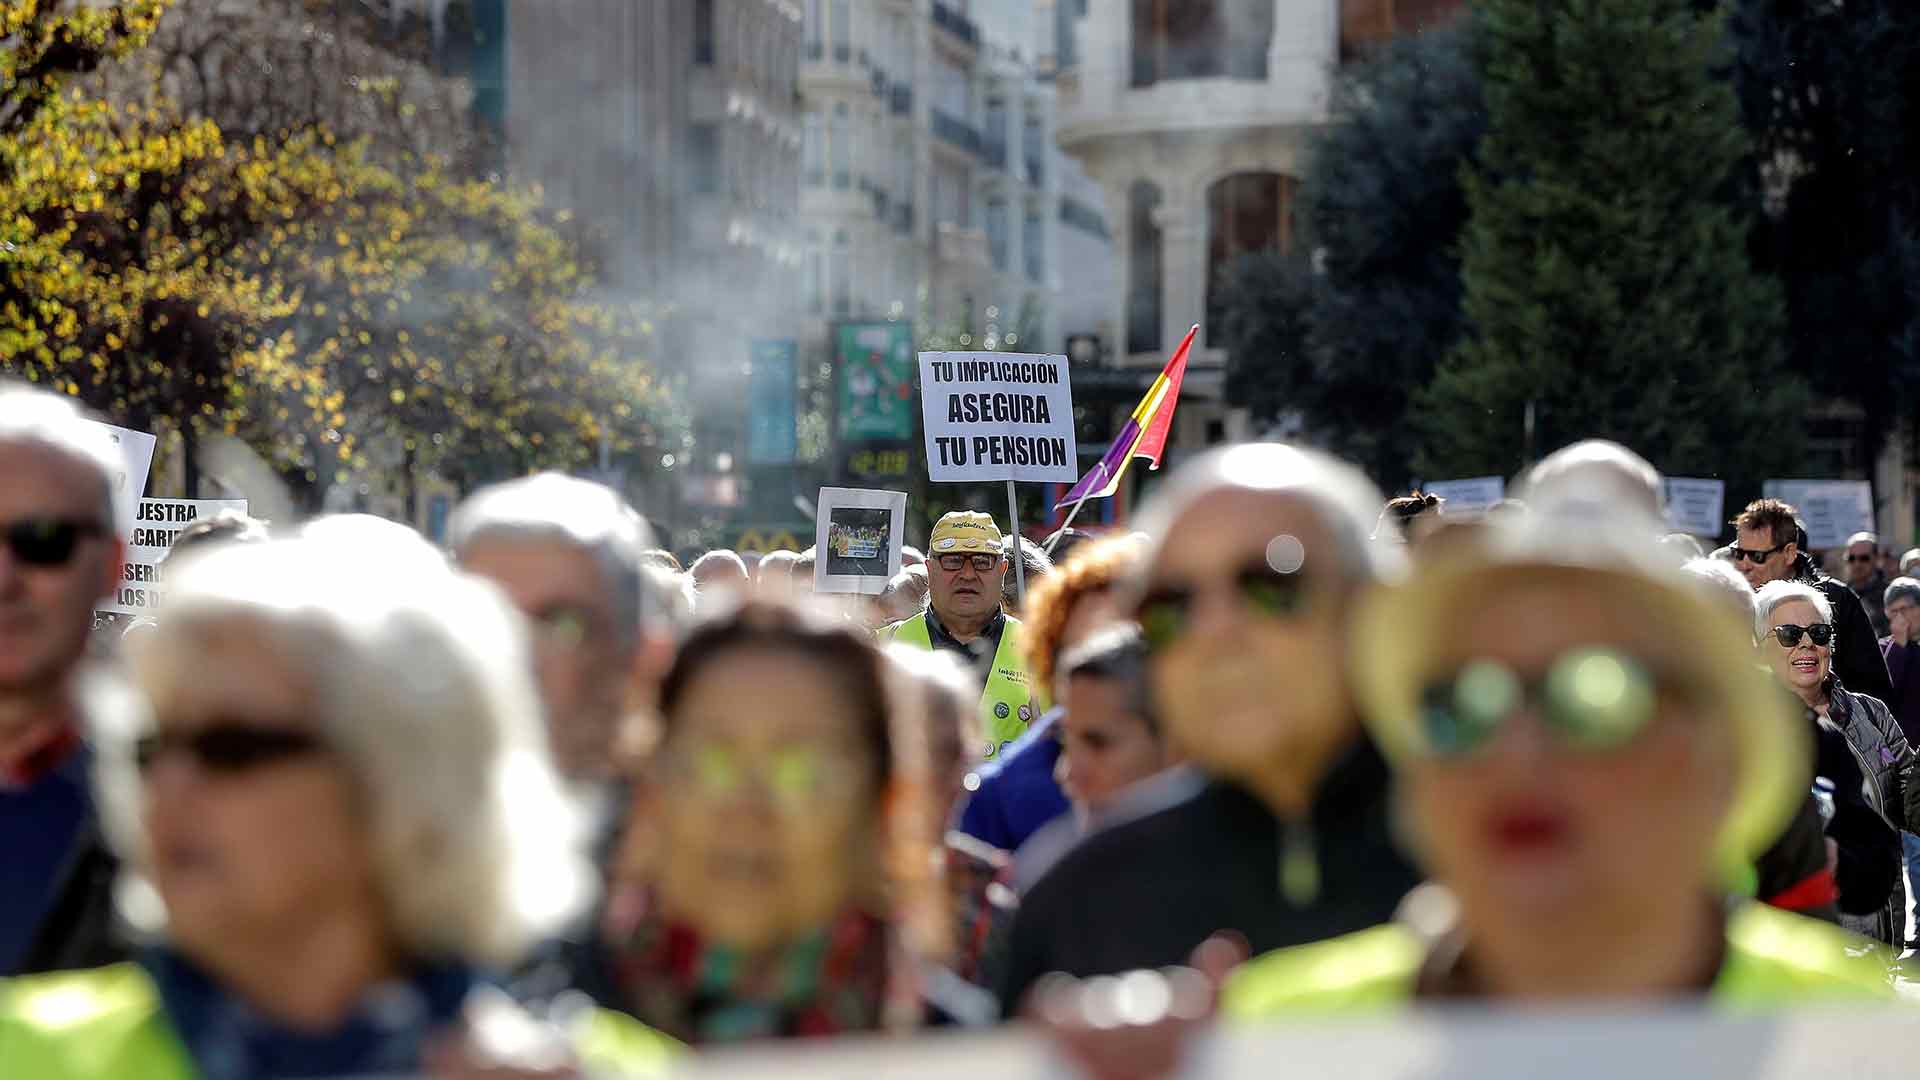 Miles de pensionistas protestan en toda España por unas pensiones dignas: "Somos viejos, pero no tontos"